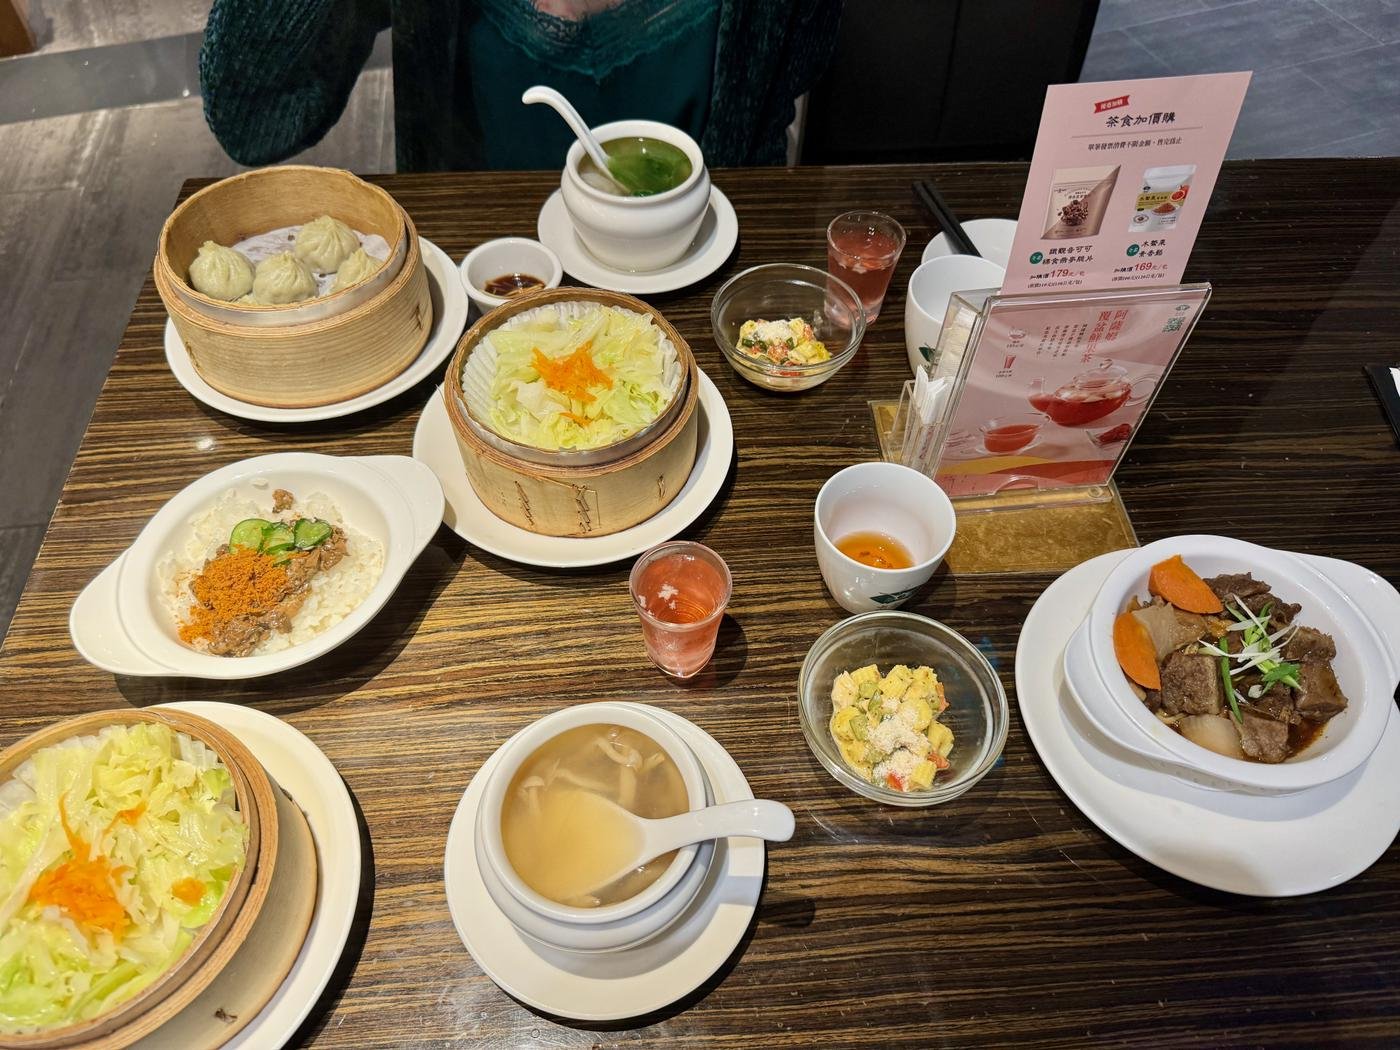 Китайский сет для двоих в ресторане cha for tea. Позже вынесут чай и локальные десерты. Блюда почему-то напомнили мне русскую кухню: суп, горшочек с мясом, капуста, компот.